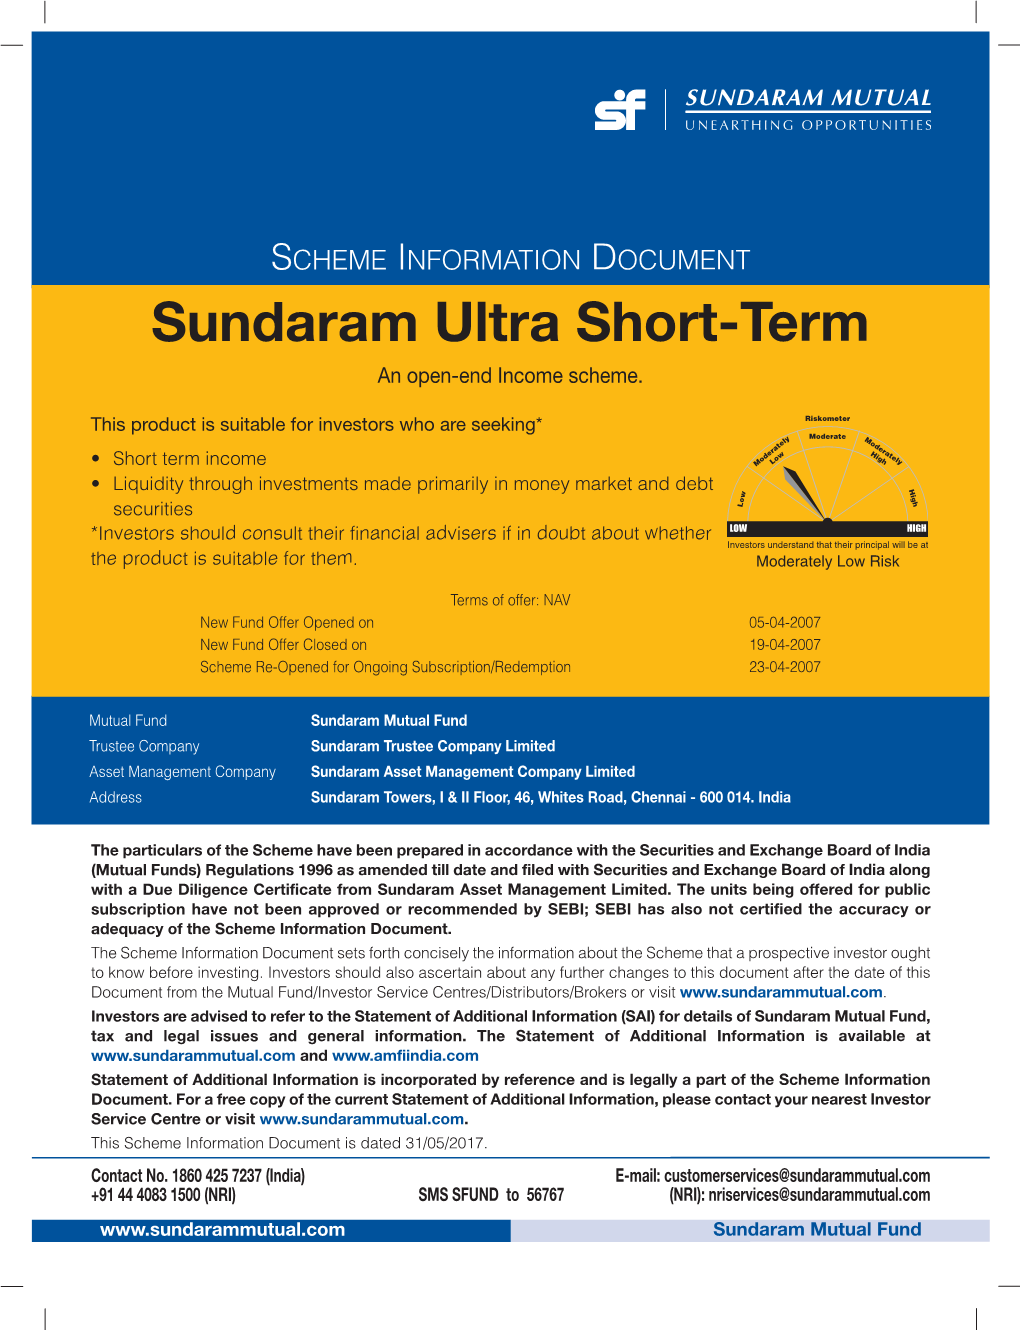 Sundaram Ultra Short-Term an Open-End Income Scheme